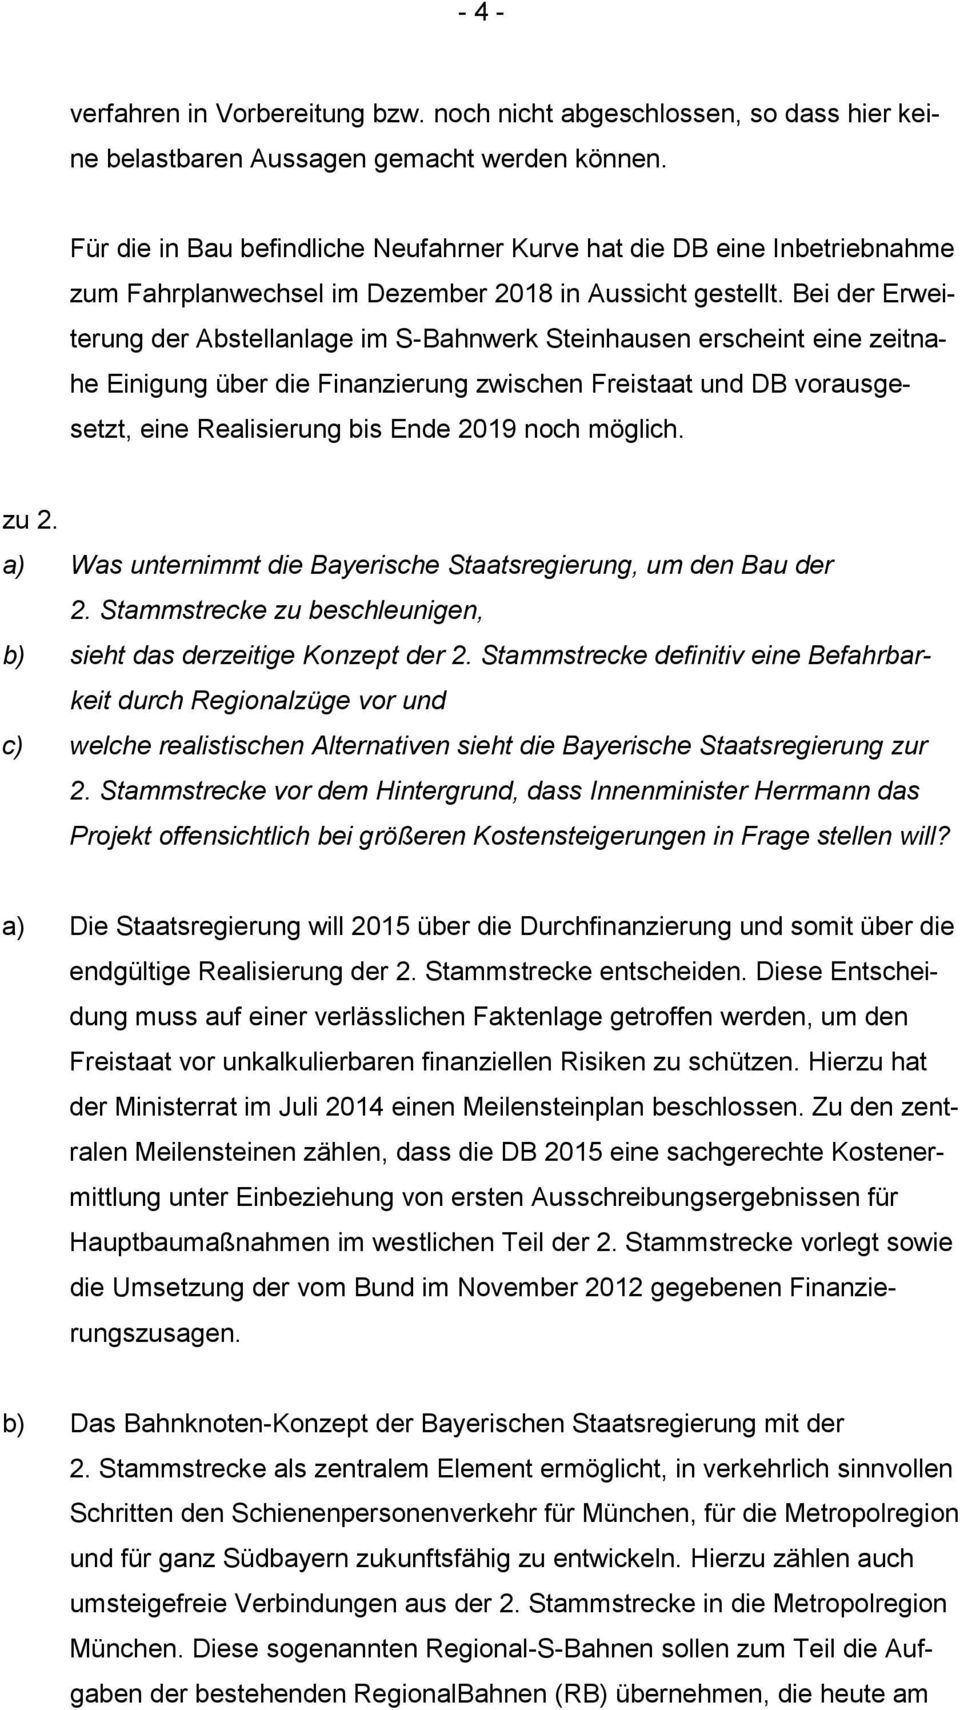 Bei der Erweiterung der Abstellanlage im S-Bahnwerk Steinhausen erscheint eine zeitnahe Einigung über die Finanzierung zwischen Freistaat und DB vorausgesetzt, eine Realisierung bis Ende 2019 noch